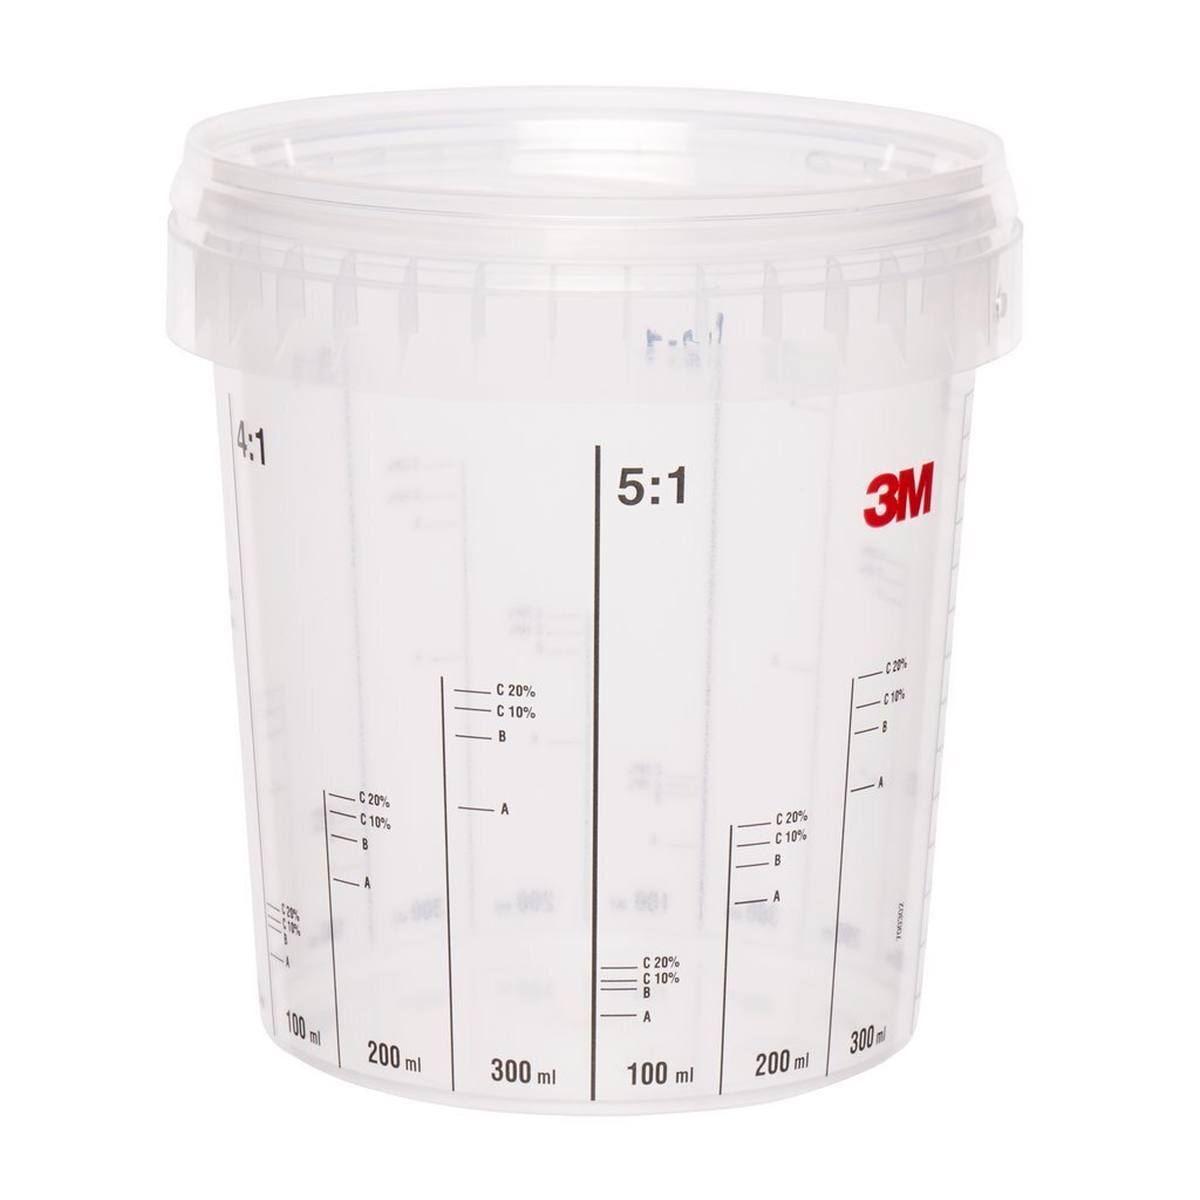 3M Vaso mezclador, 870 ml 90 unidades / paquete #50403